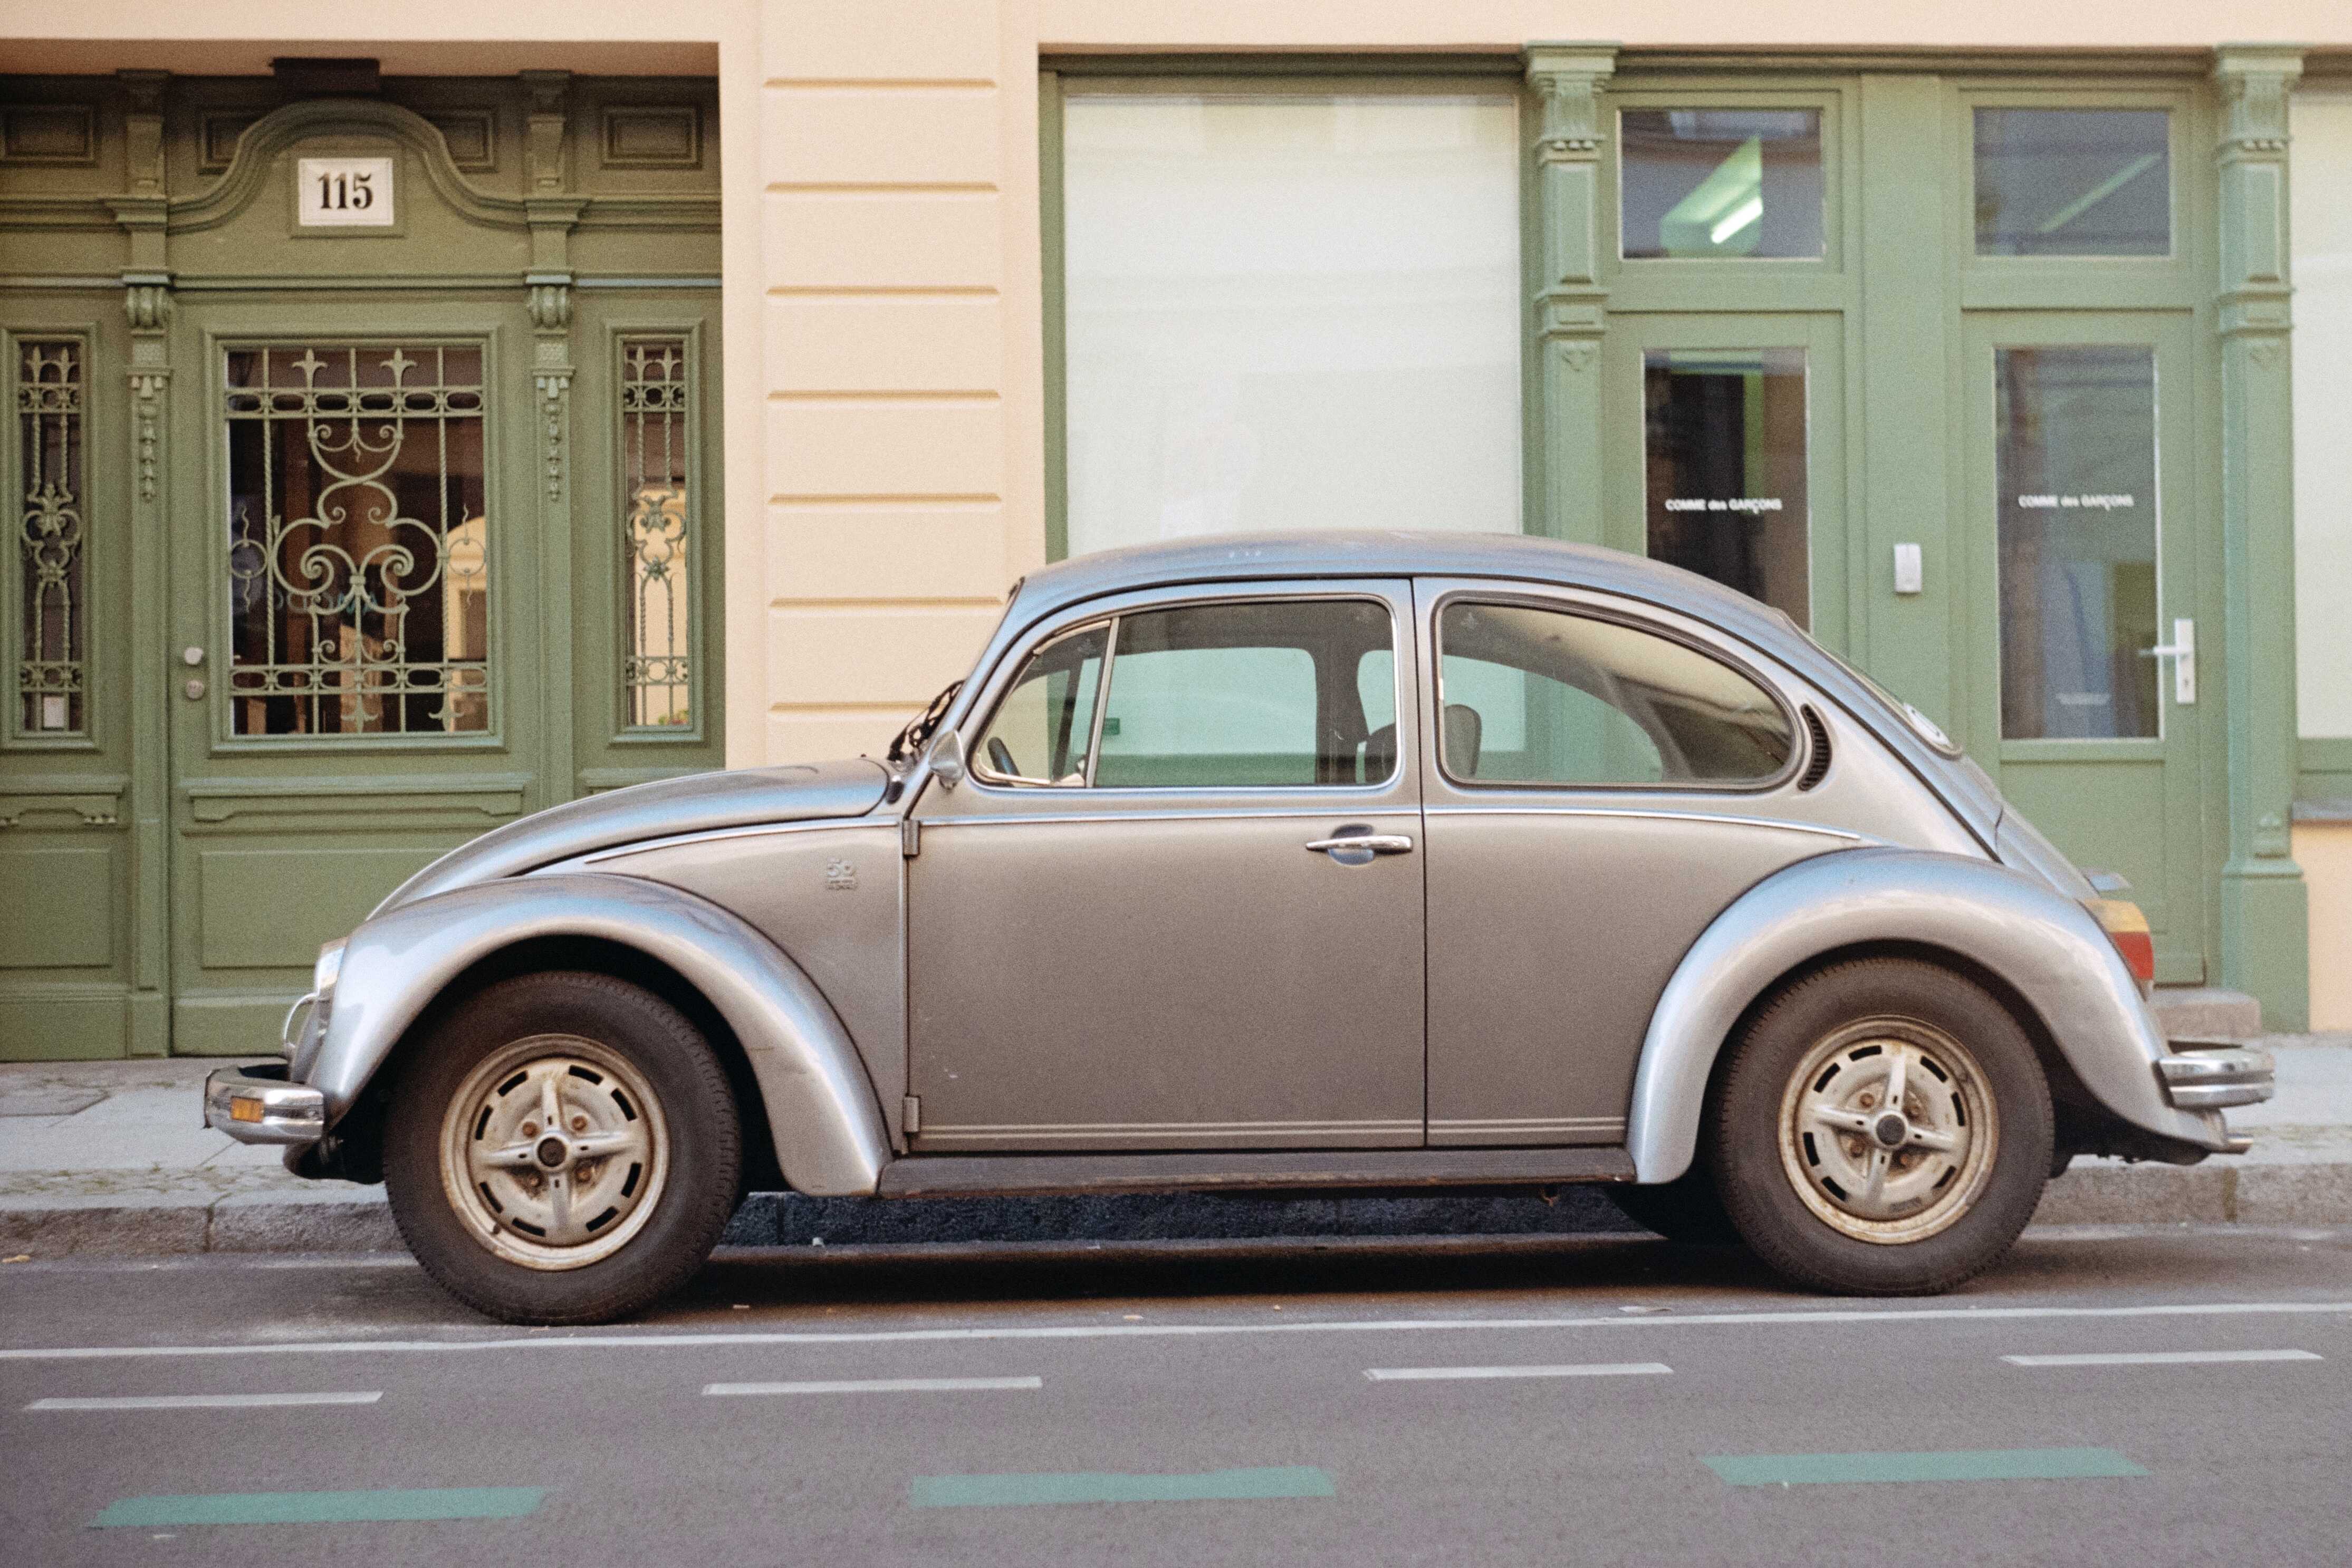 Wallpapers city volkswagen beetle cars on the desktop